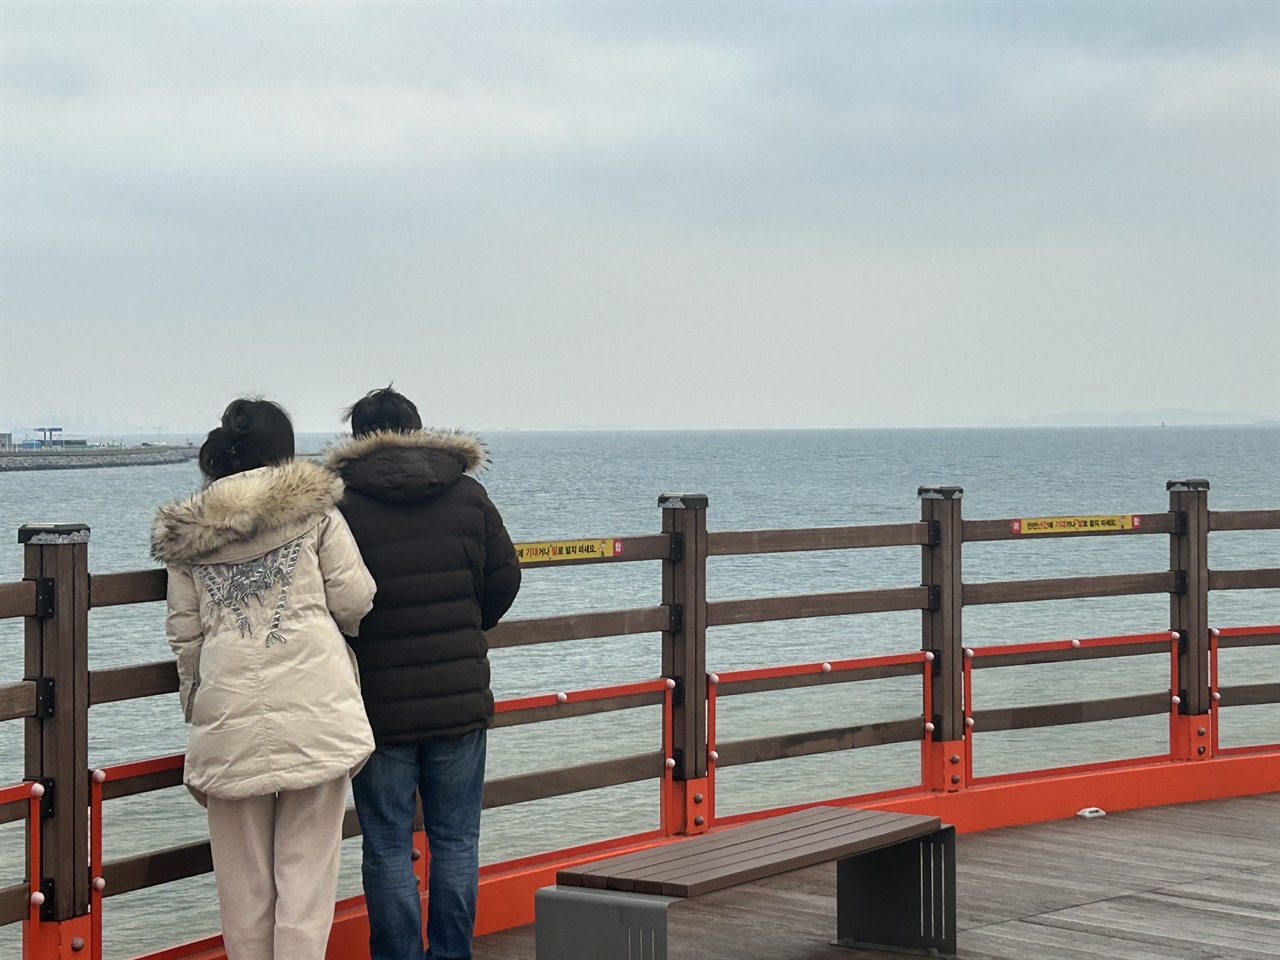  해넘이를 보기위해 홍성 서부면을 찾은 관광객들은 흐린 날씨로 해넘이를 볼 수 없었지만, 관광객들은 대부분 인근 카페에서 계묘년 마지막 날을 함께했다.